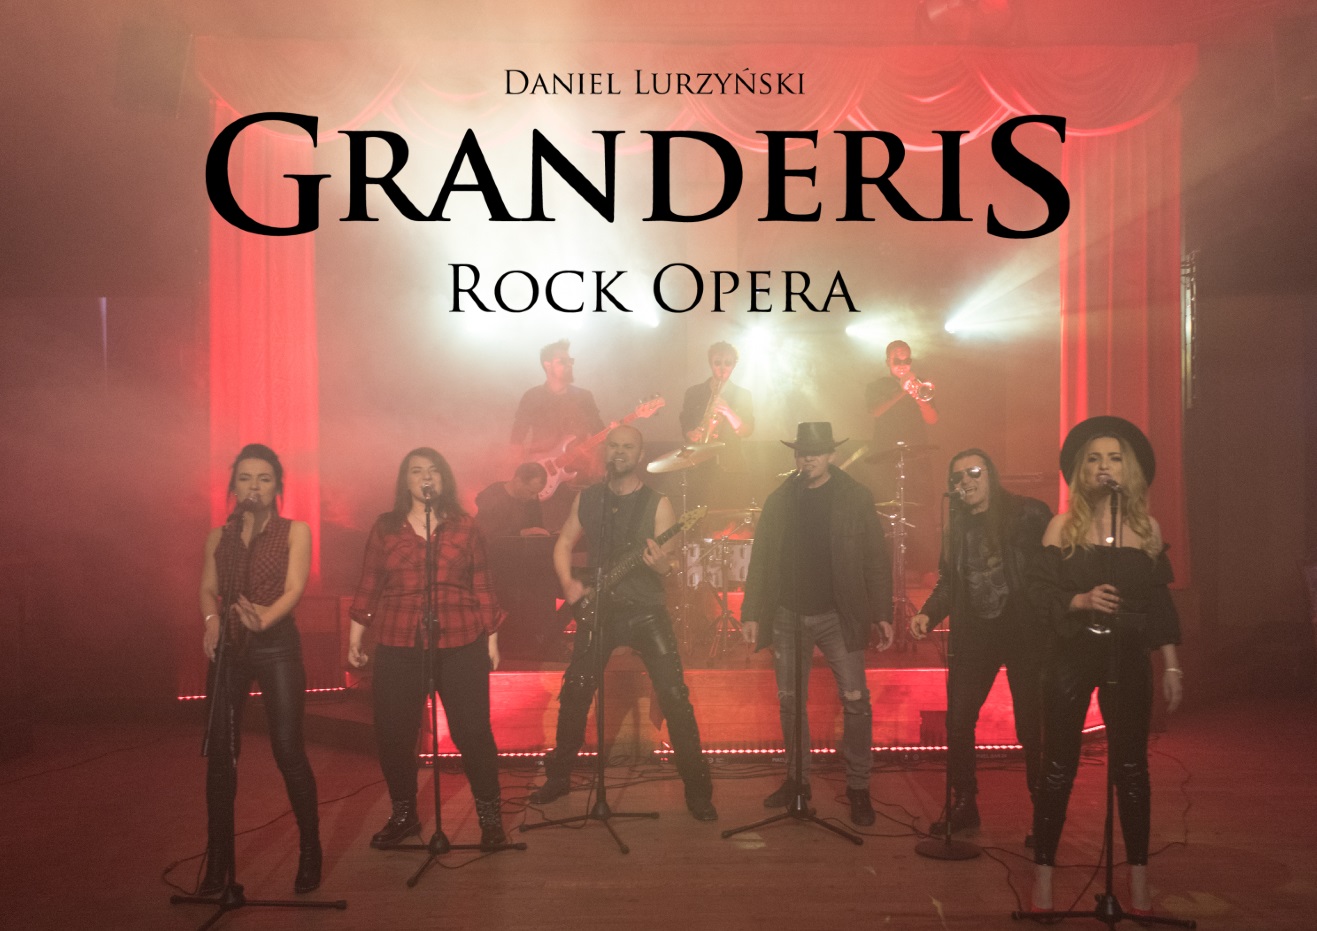 Granderis Rock Opera - a musical project by Daniel Lurzynski